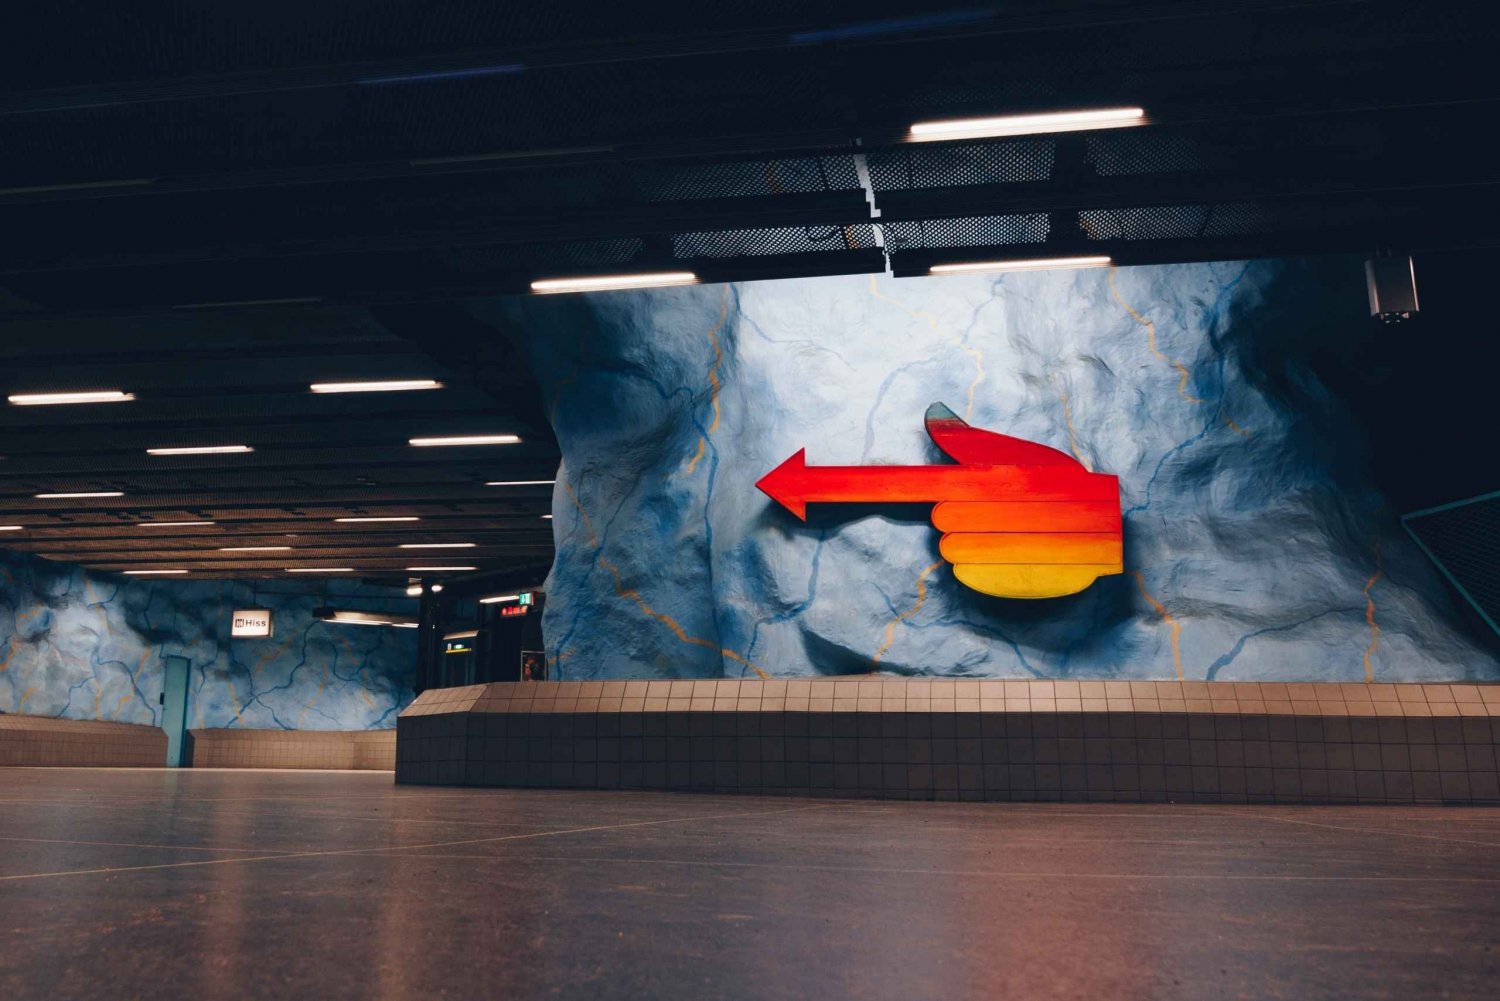 Estocolmo: Viaje artístico en metro con un guía local